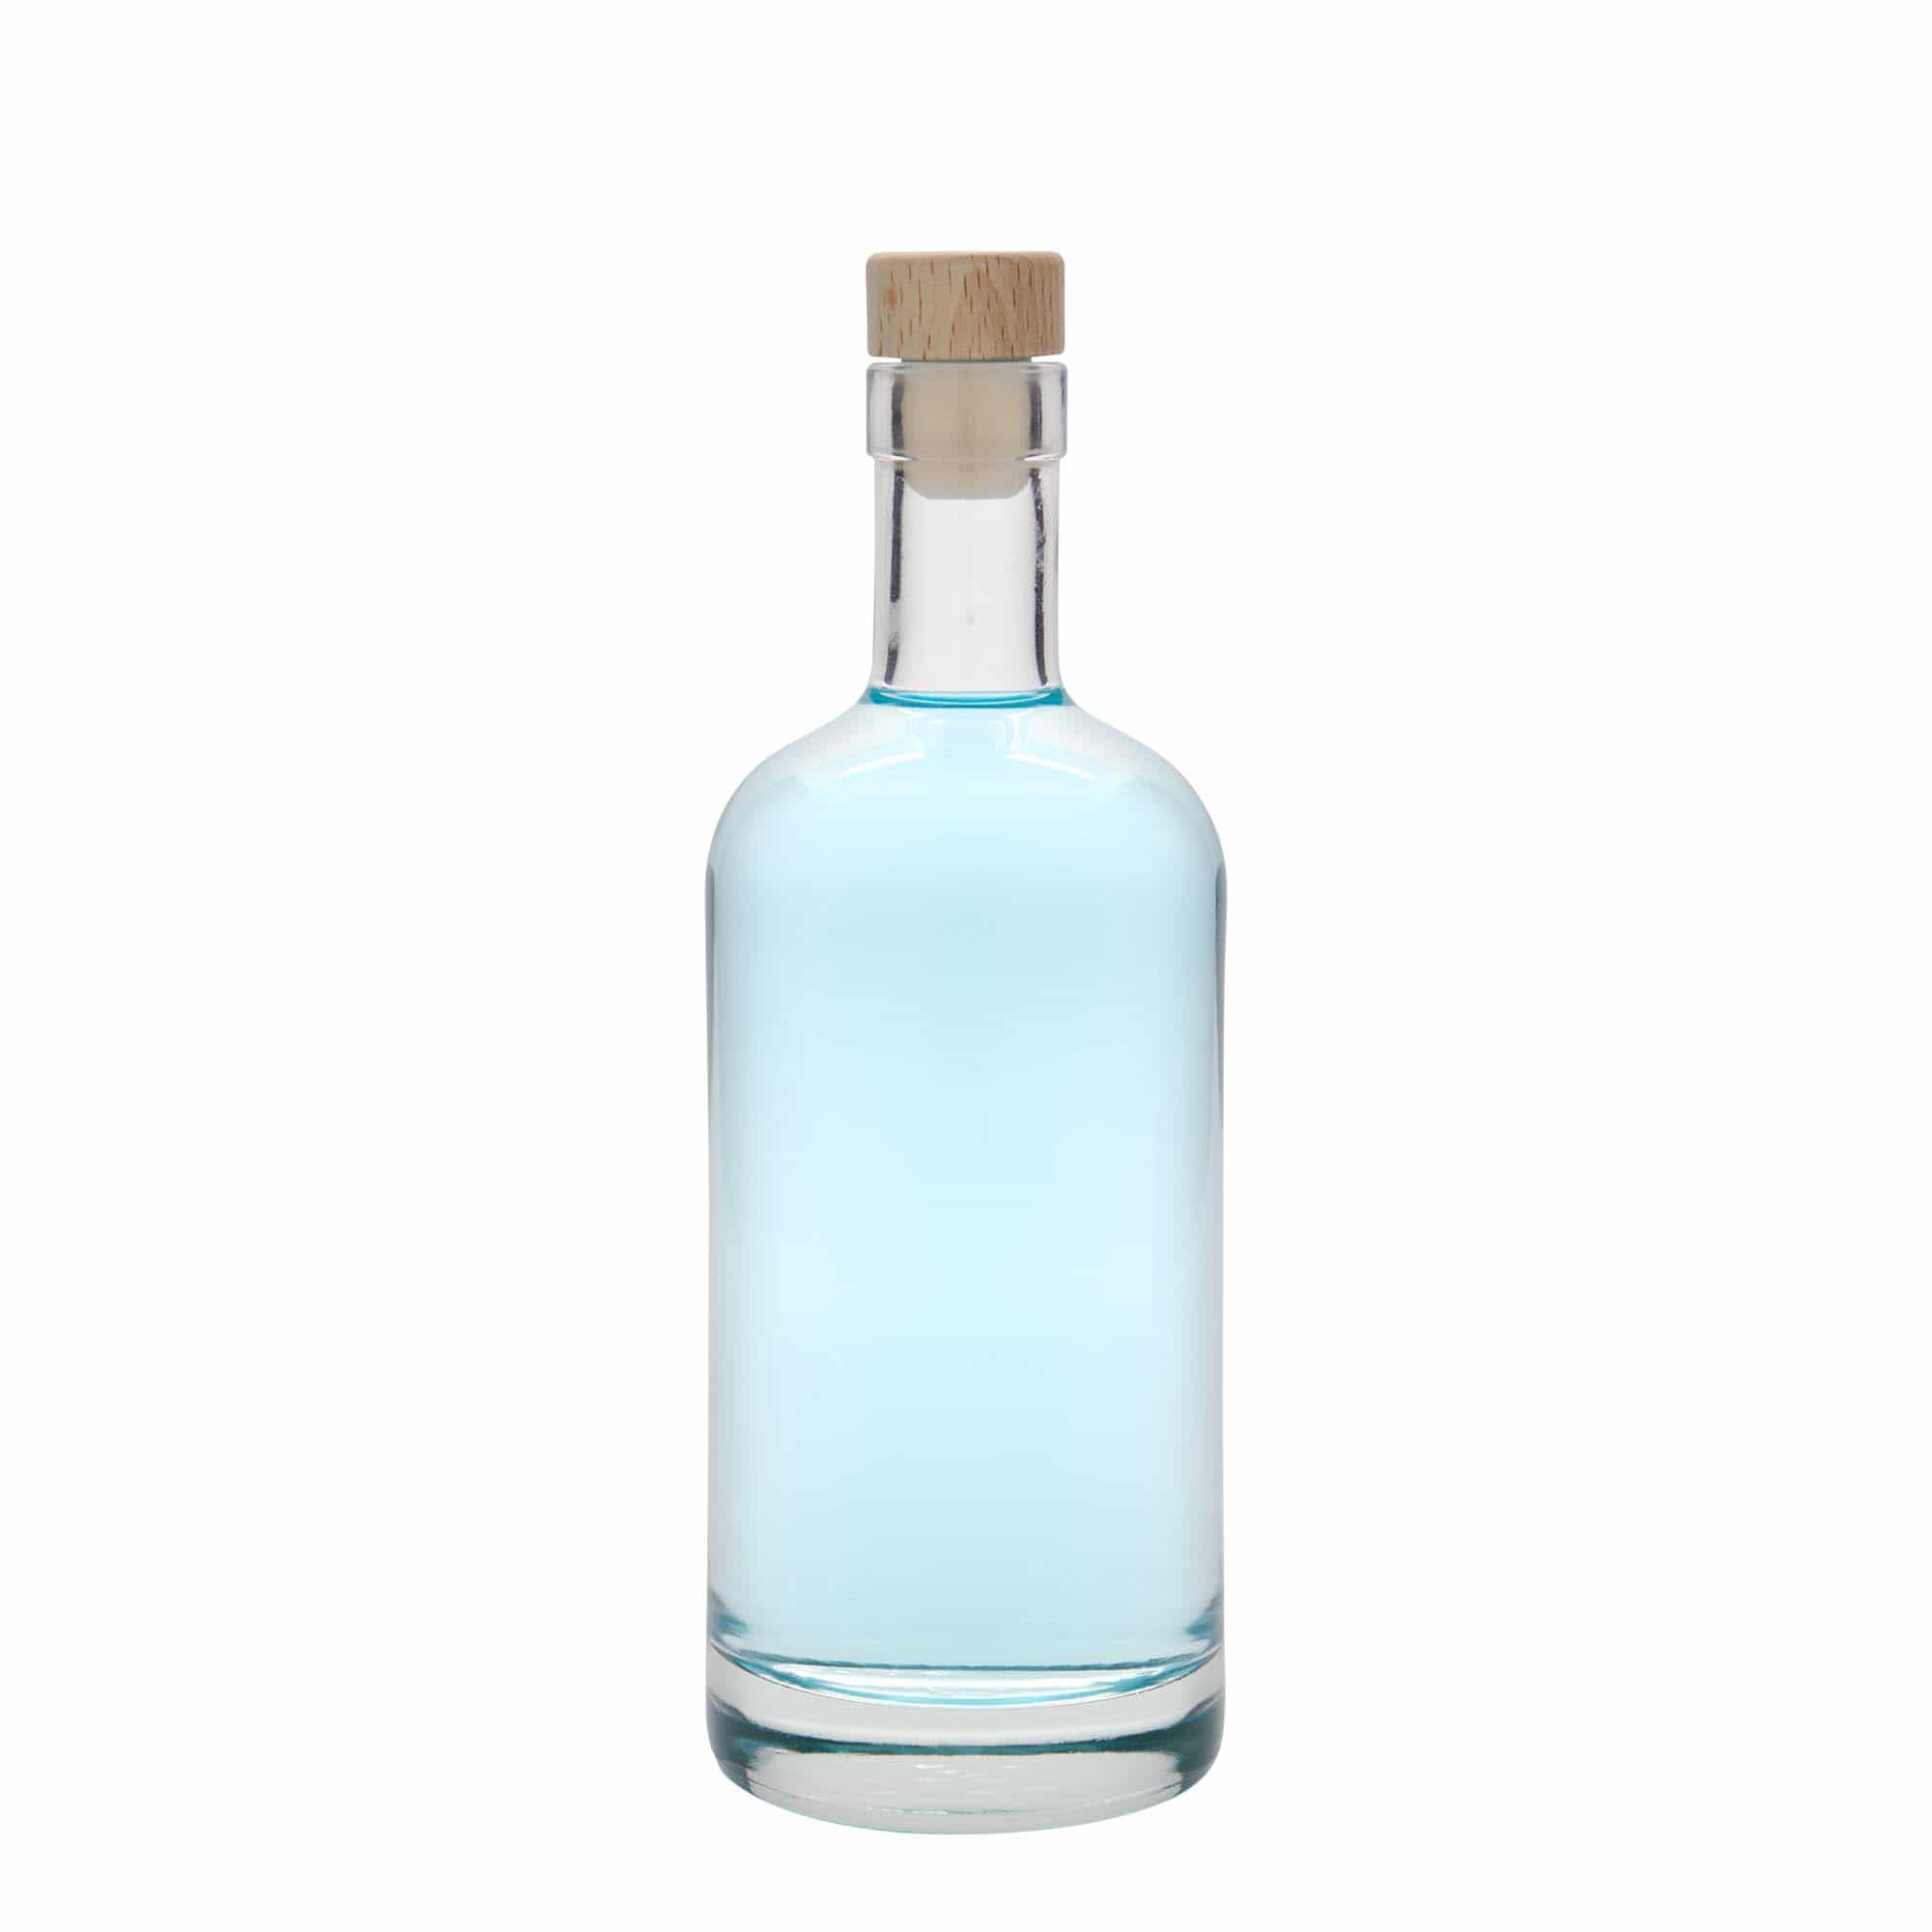 500 ml glass bottle 'Linea Uno', closure: cork